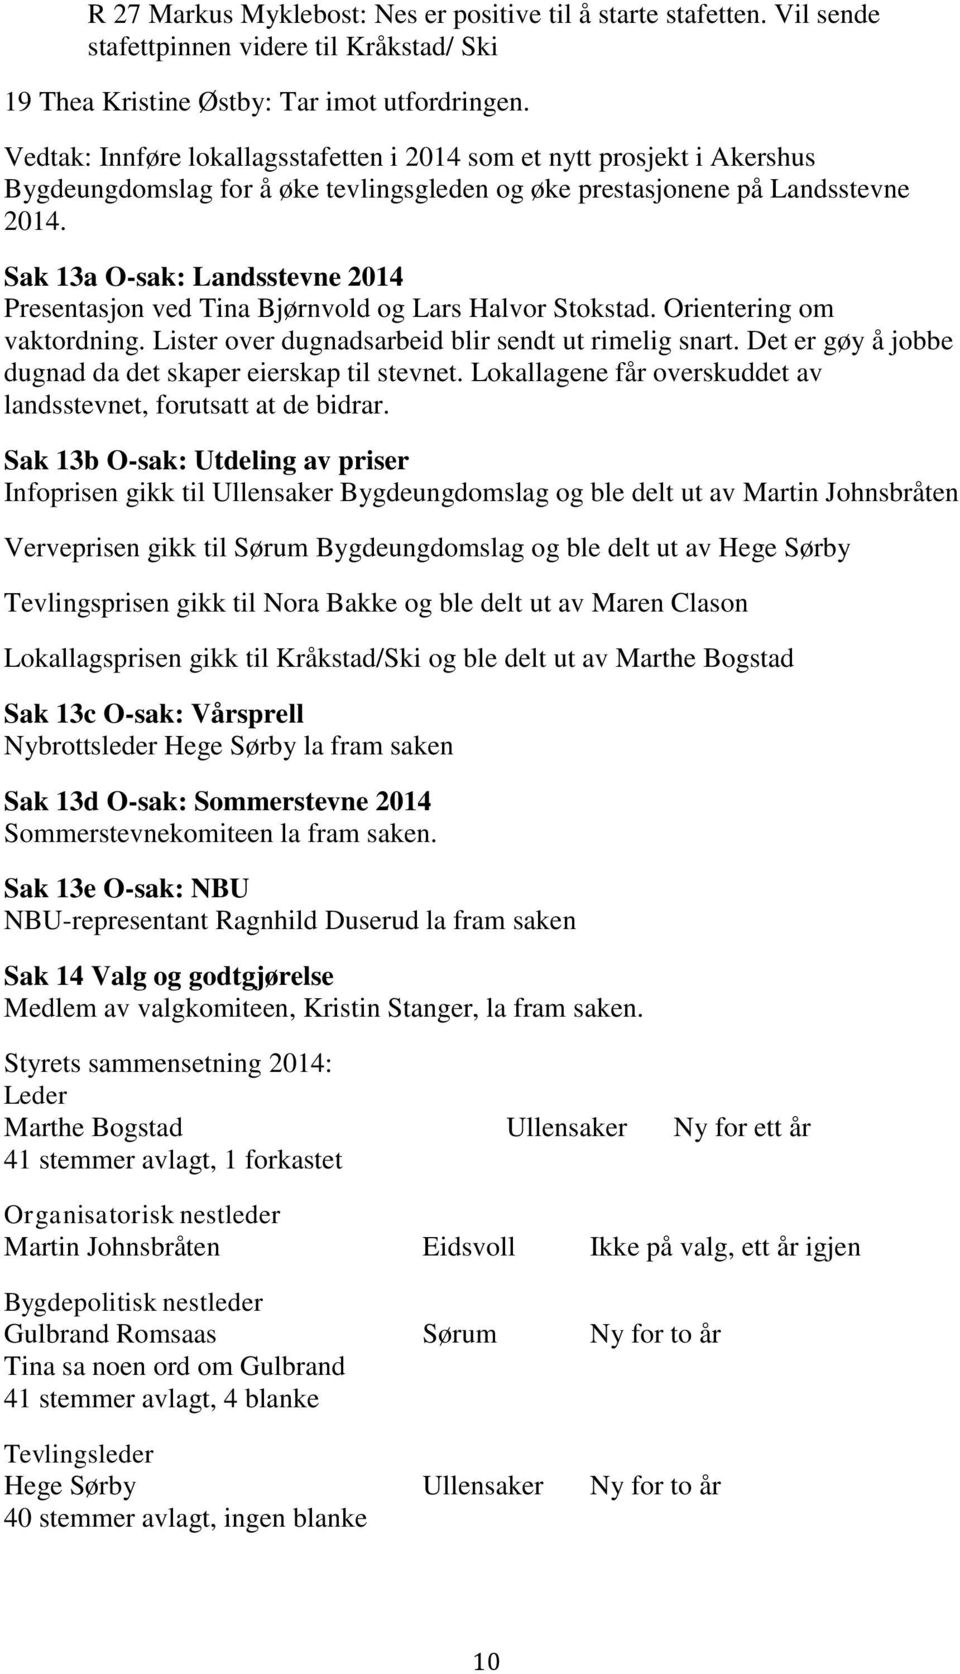 Sak 13a O-sak: Landsstevne 2014 Presentasjon ved Tina Bjørnvold og Lars Halvor Stokstad. Orientering om vaktordning. Lister over dugnadsarbeid blir sendt ut rimelig snart.